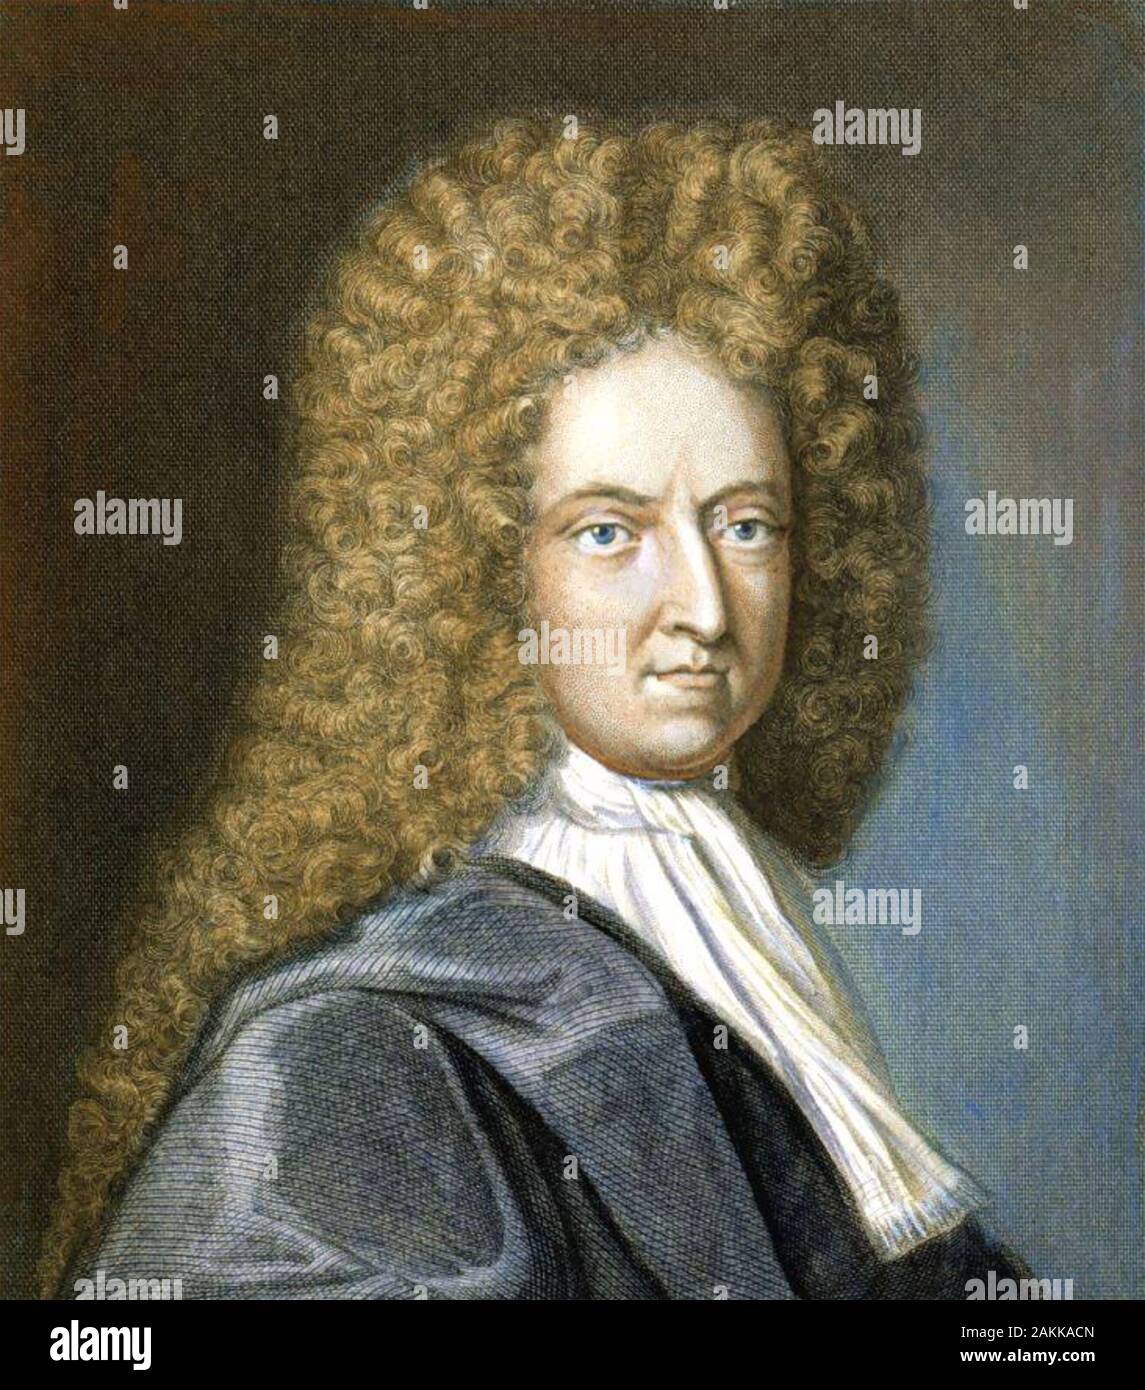 DANIEL DEFOE (c 1660-1731) comerciante inglés, Spy y autor Foto de stock